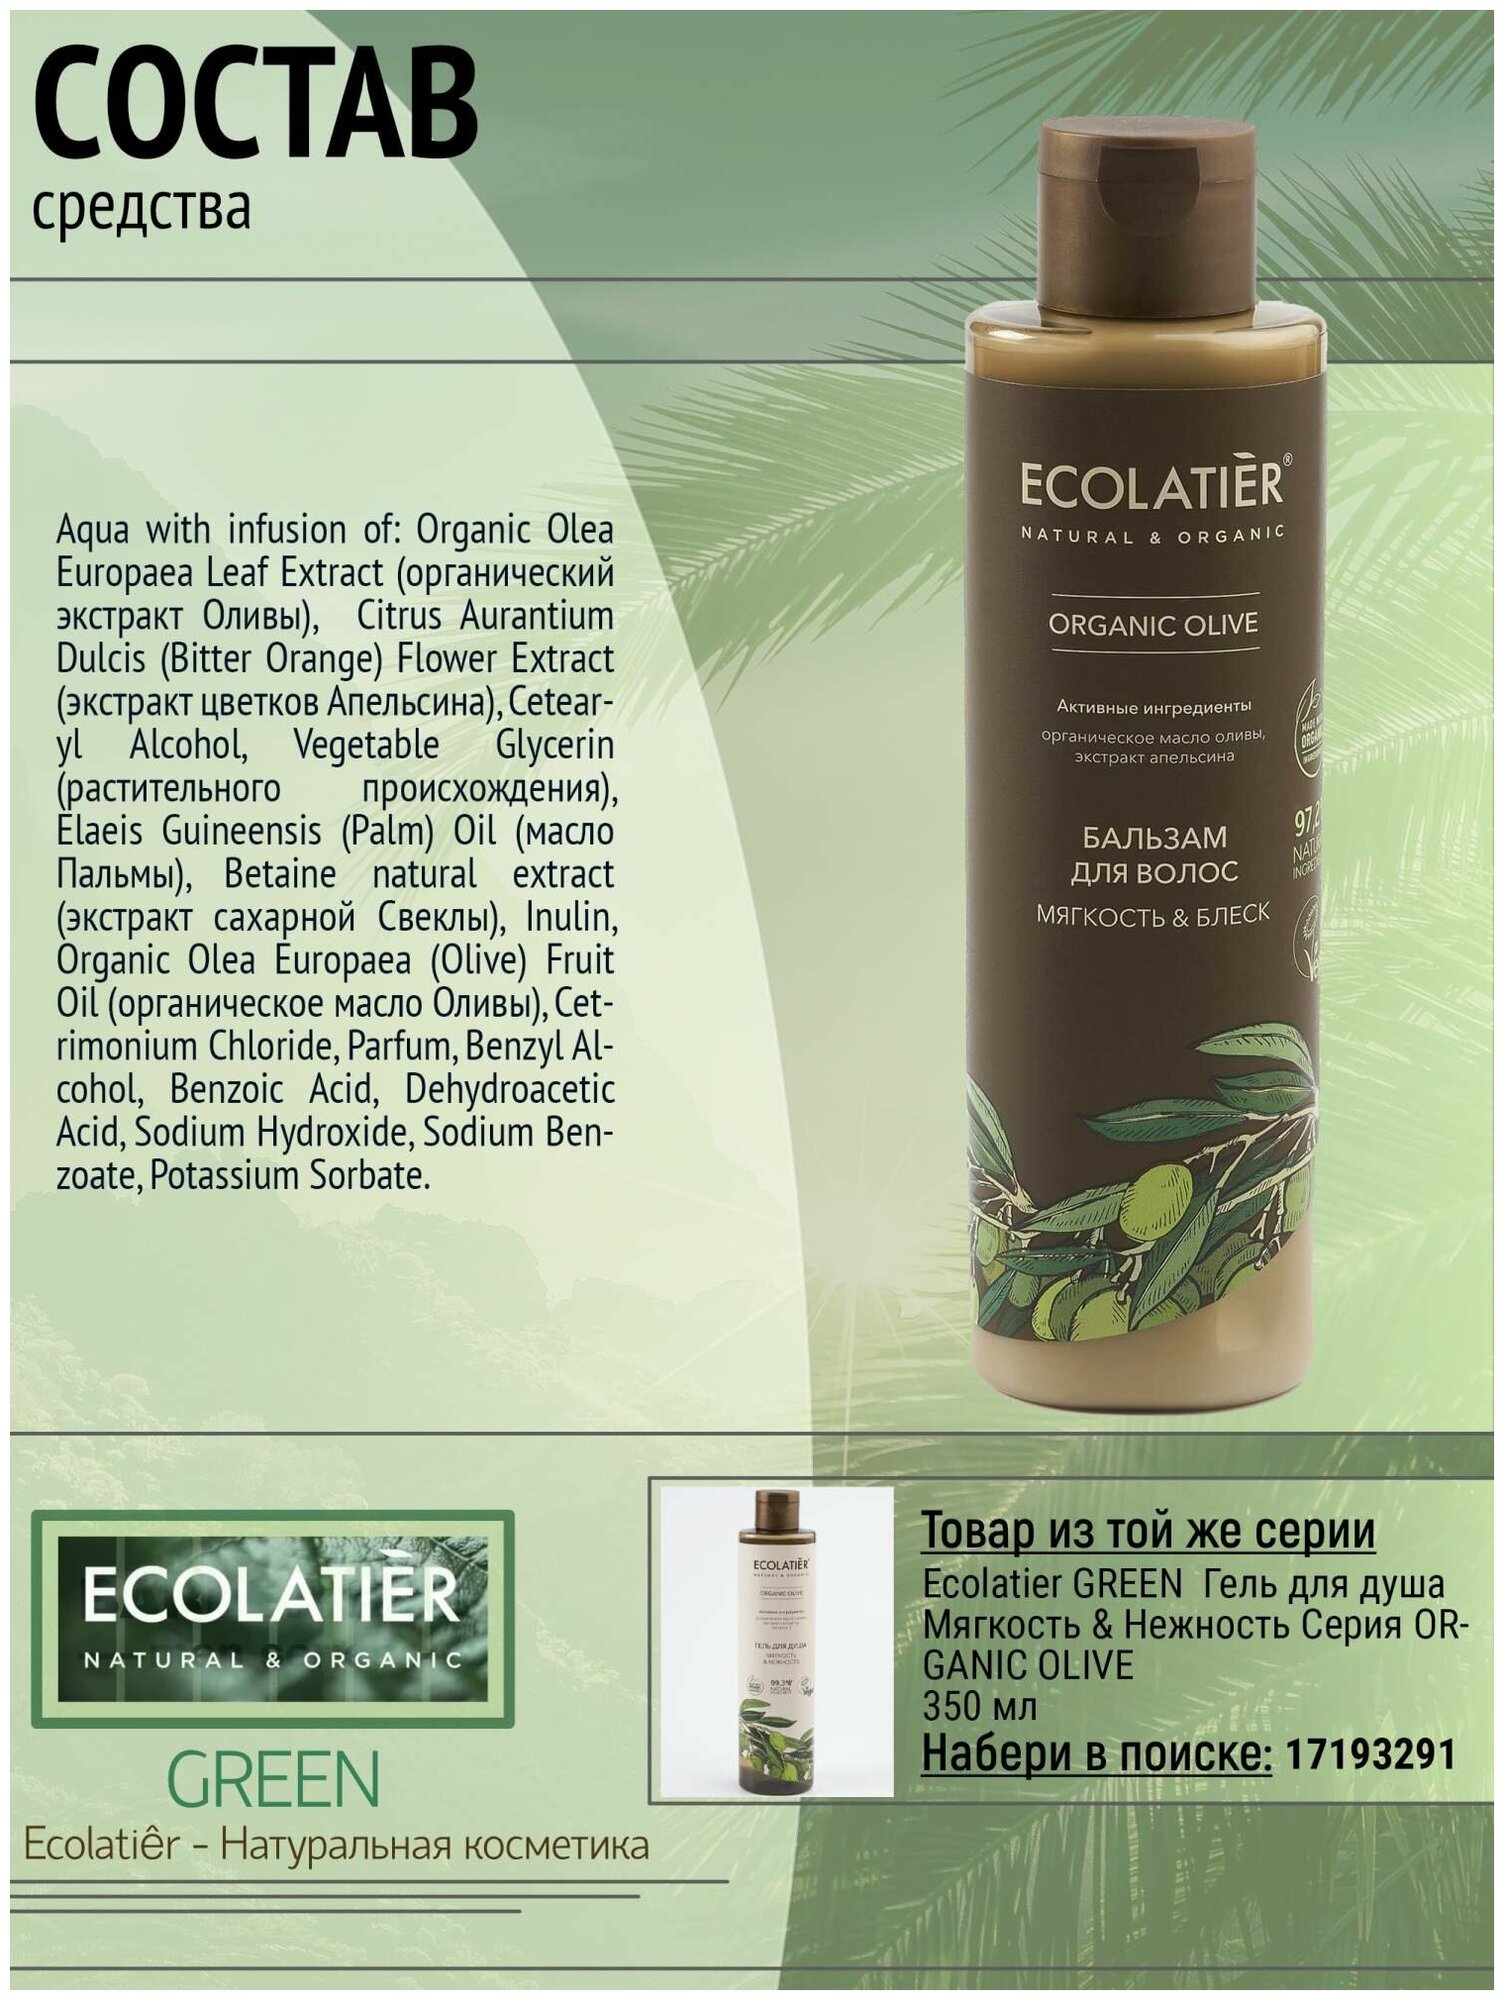 Бальзам для волос Ecolatier Organic Olive Мягкость & Блеск 250мл - фото №2